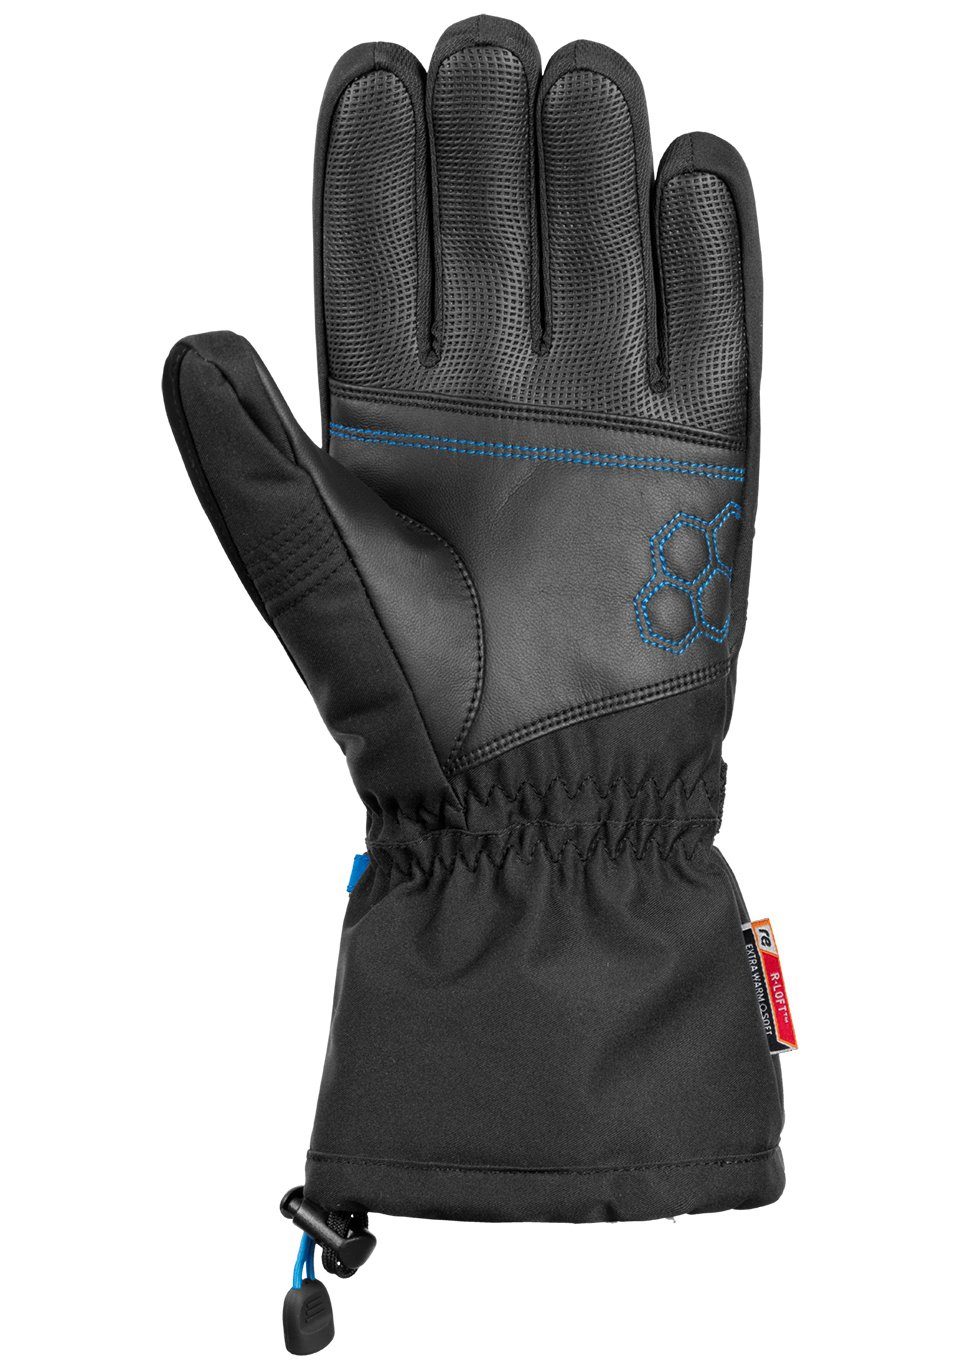 in R-TEX sportlichem blau-schwarz XT Connor Reusch Skihandschuhe Design